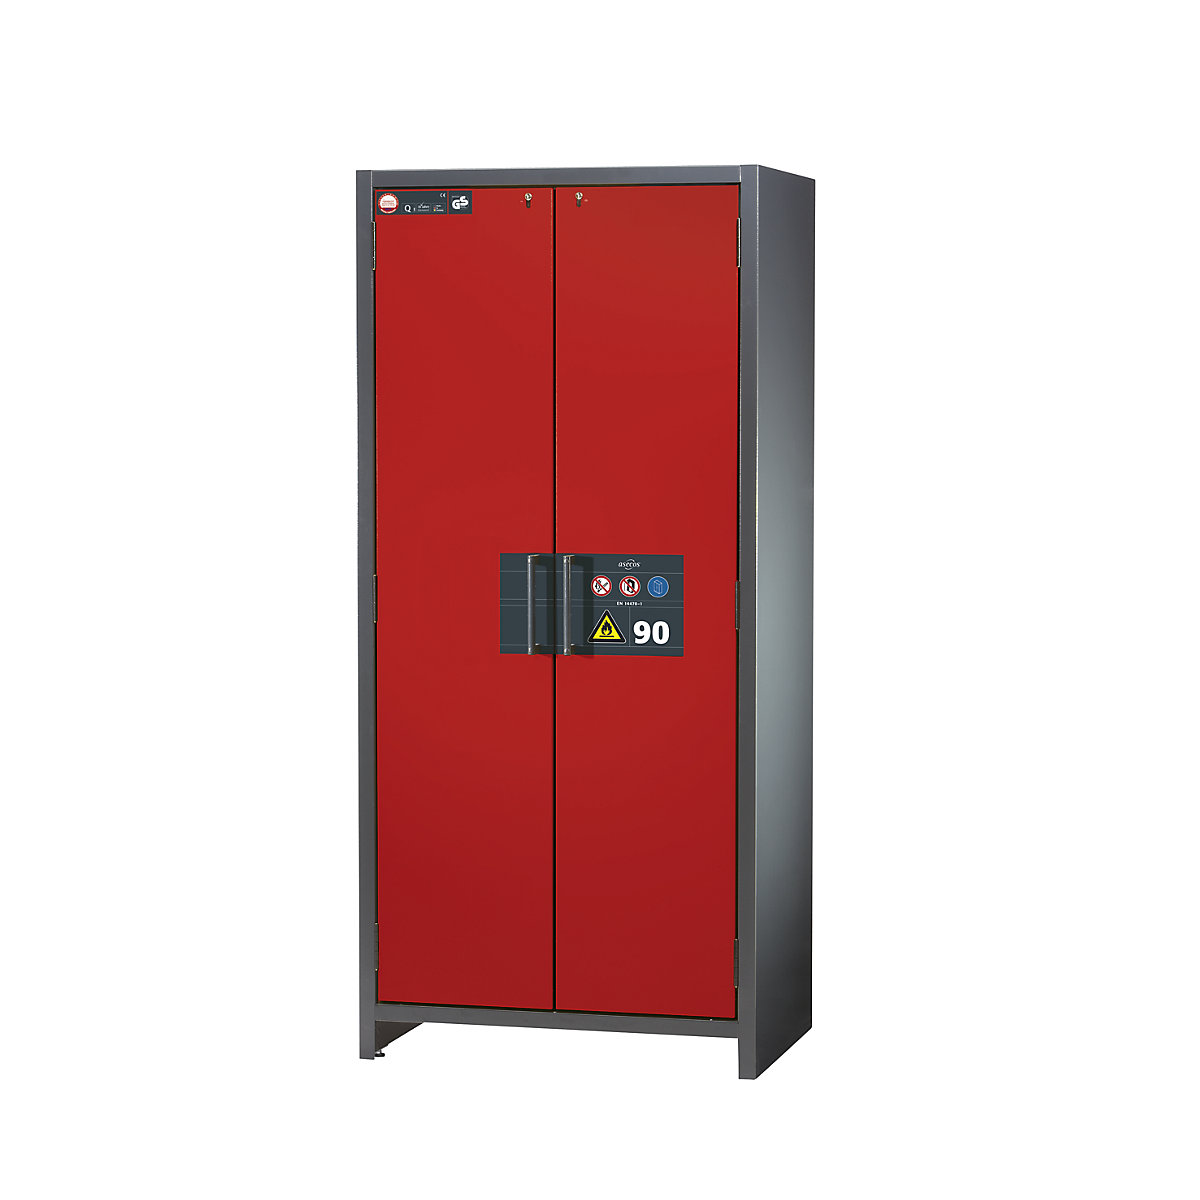 Fire resistant industrial hazardous goods cupboard, type 90 – asecos